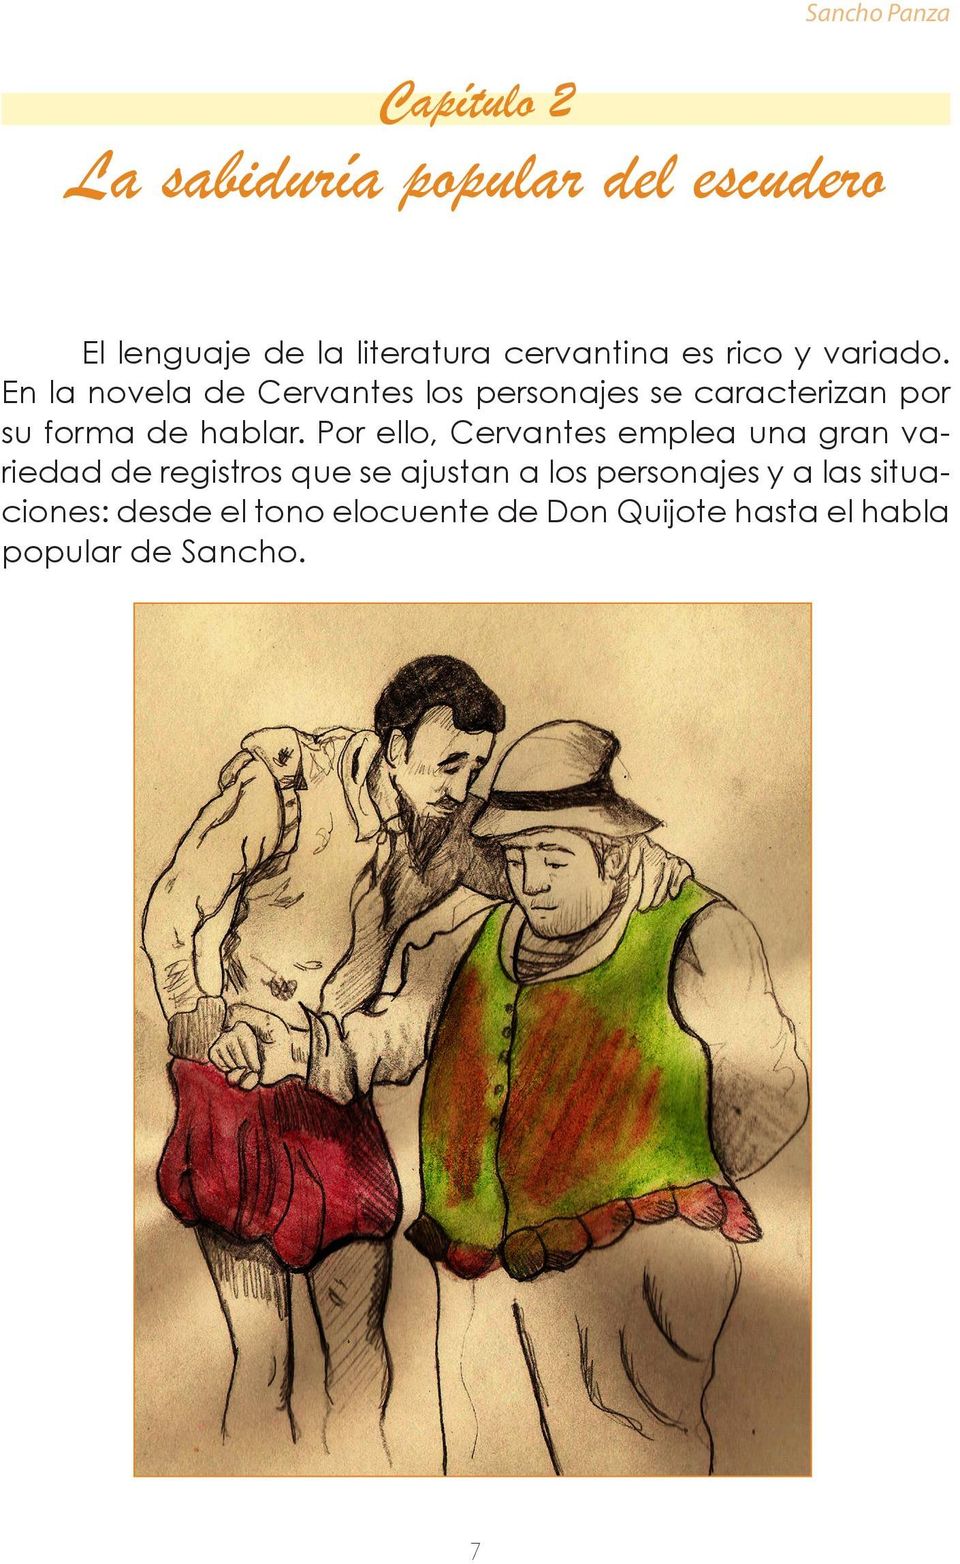 En la novela de Cervantes los personajes se caracterizan por su forma de hablar.